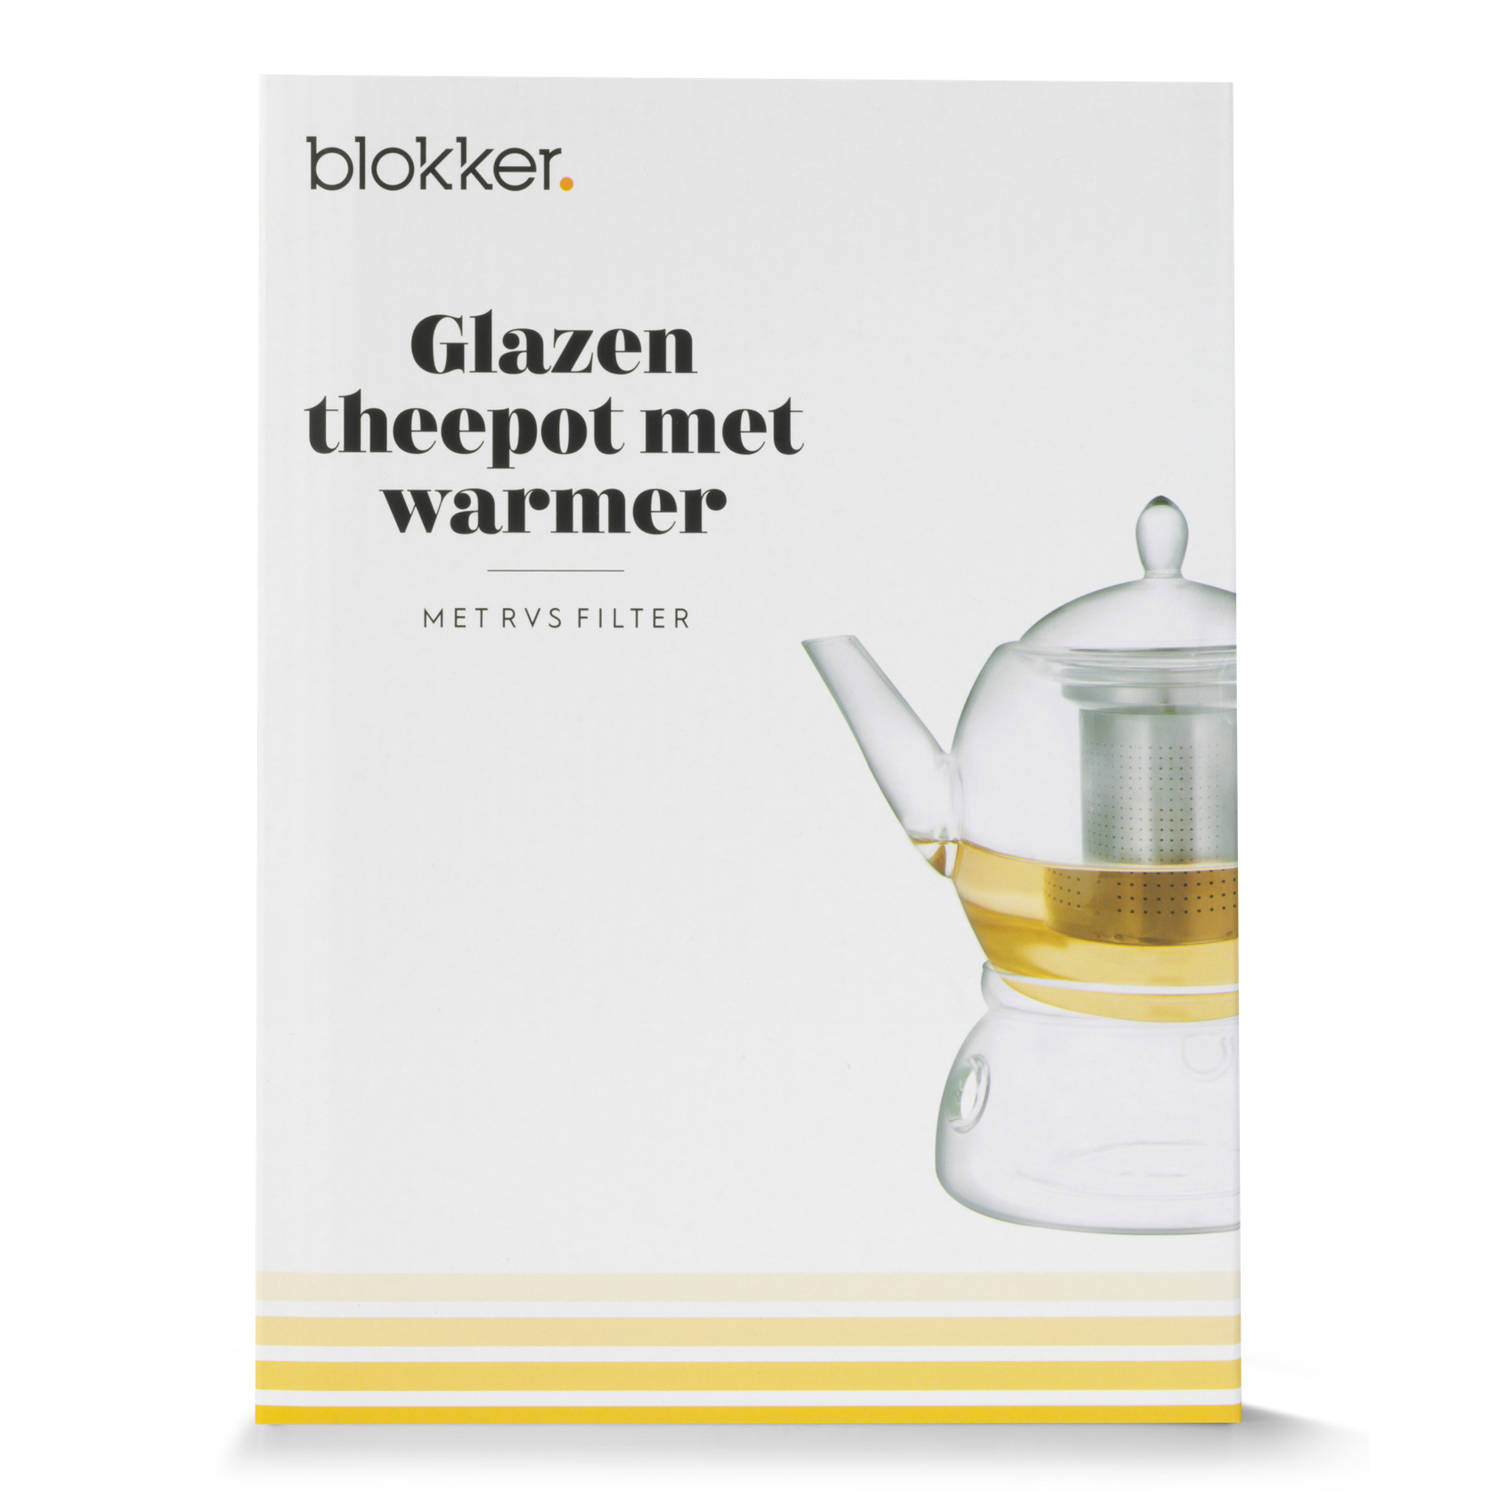 anders isolatie Aardbei Blokker theepot - met warmer & filter - glas - 1,35 liter | Blokker